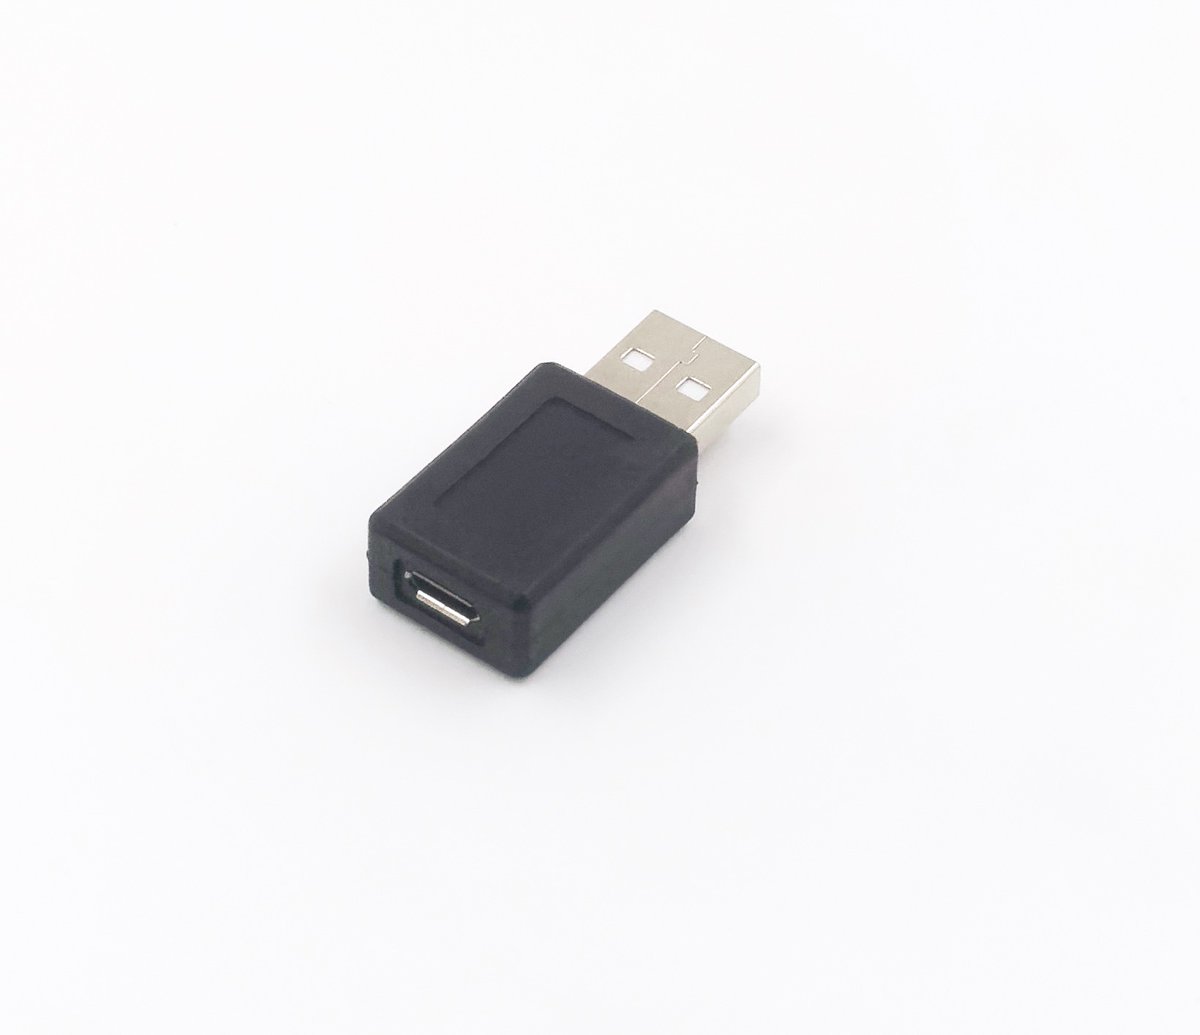 Dans la boîte USB, aussi, un hub LaCie qui a des prises USB et des prises FireWire. Et un look sympa. Et un adaptateur USB vers micro USB femelle. Pour brancher les trucs OTG sur un PC.